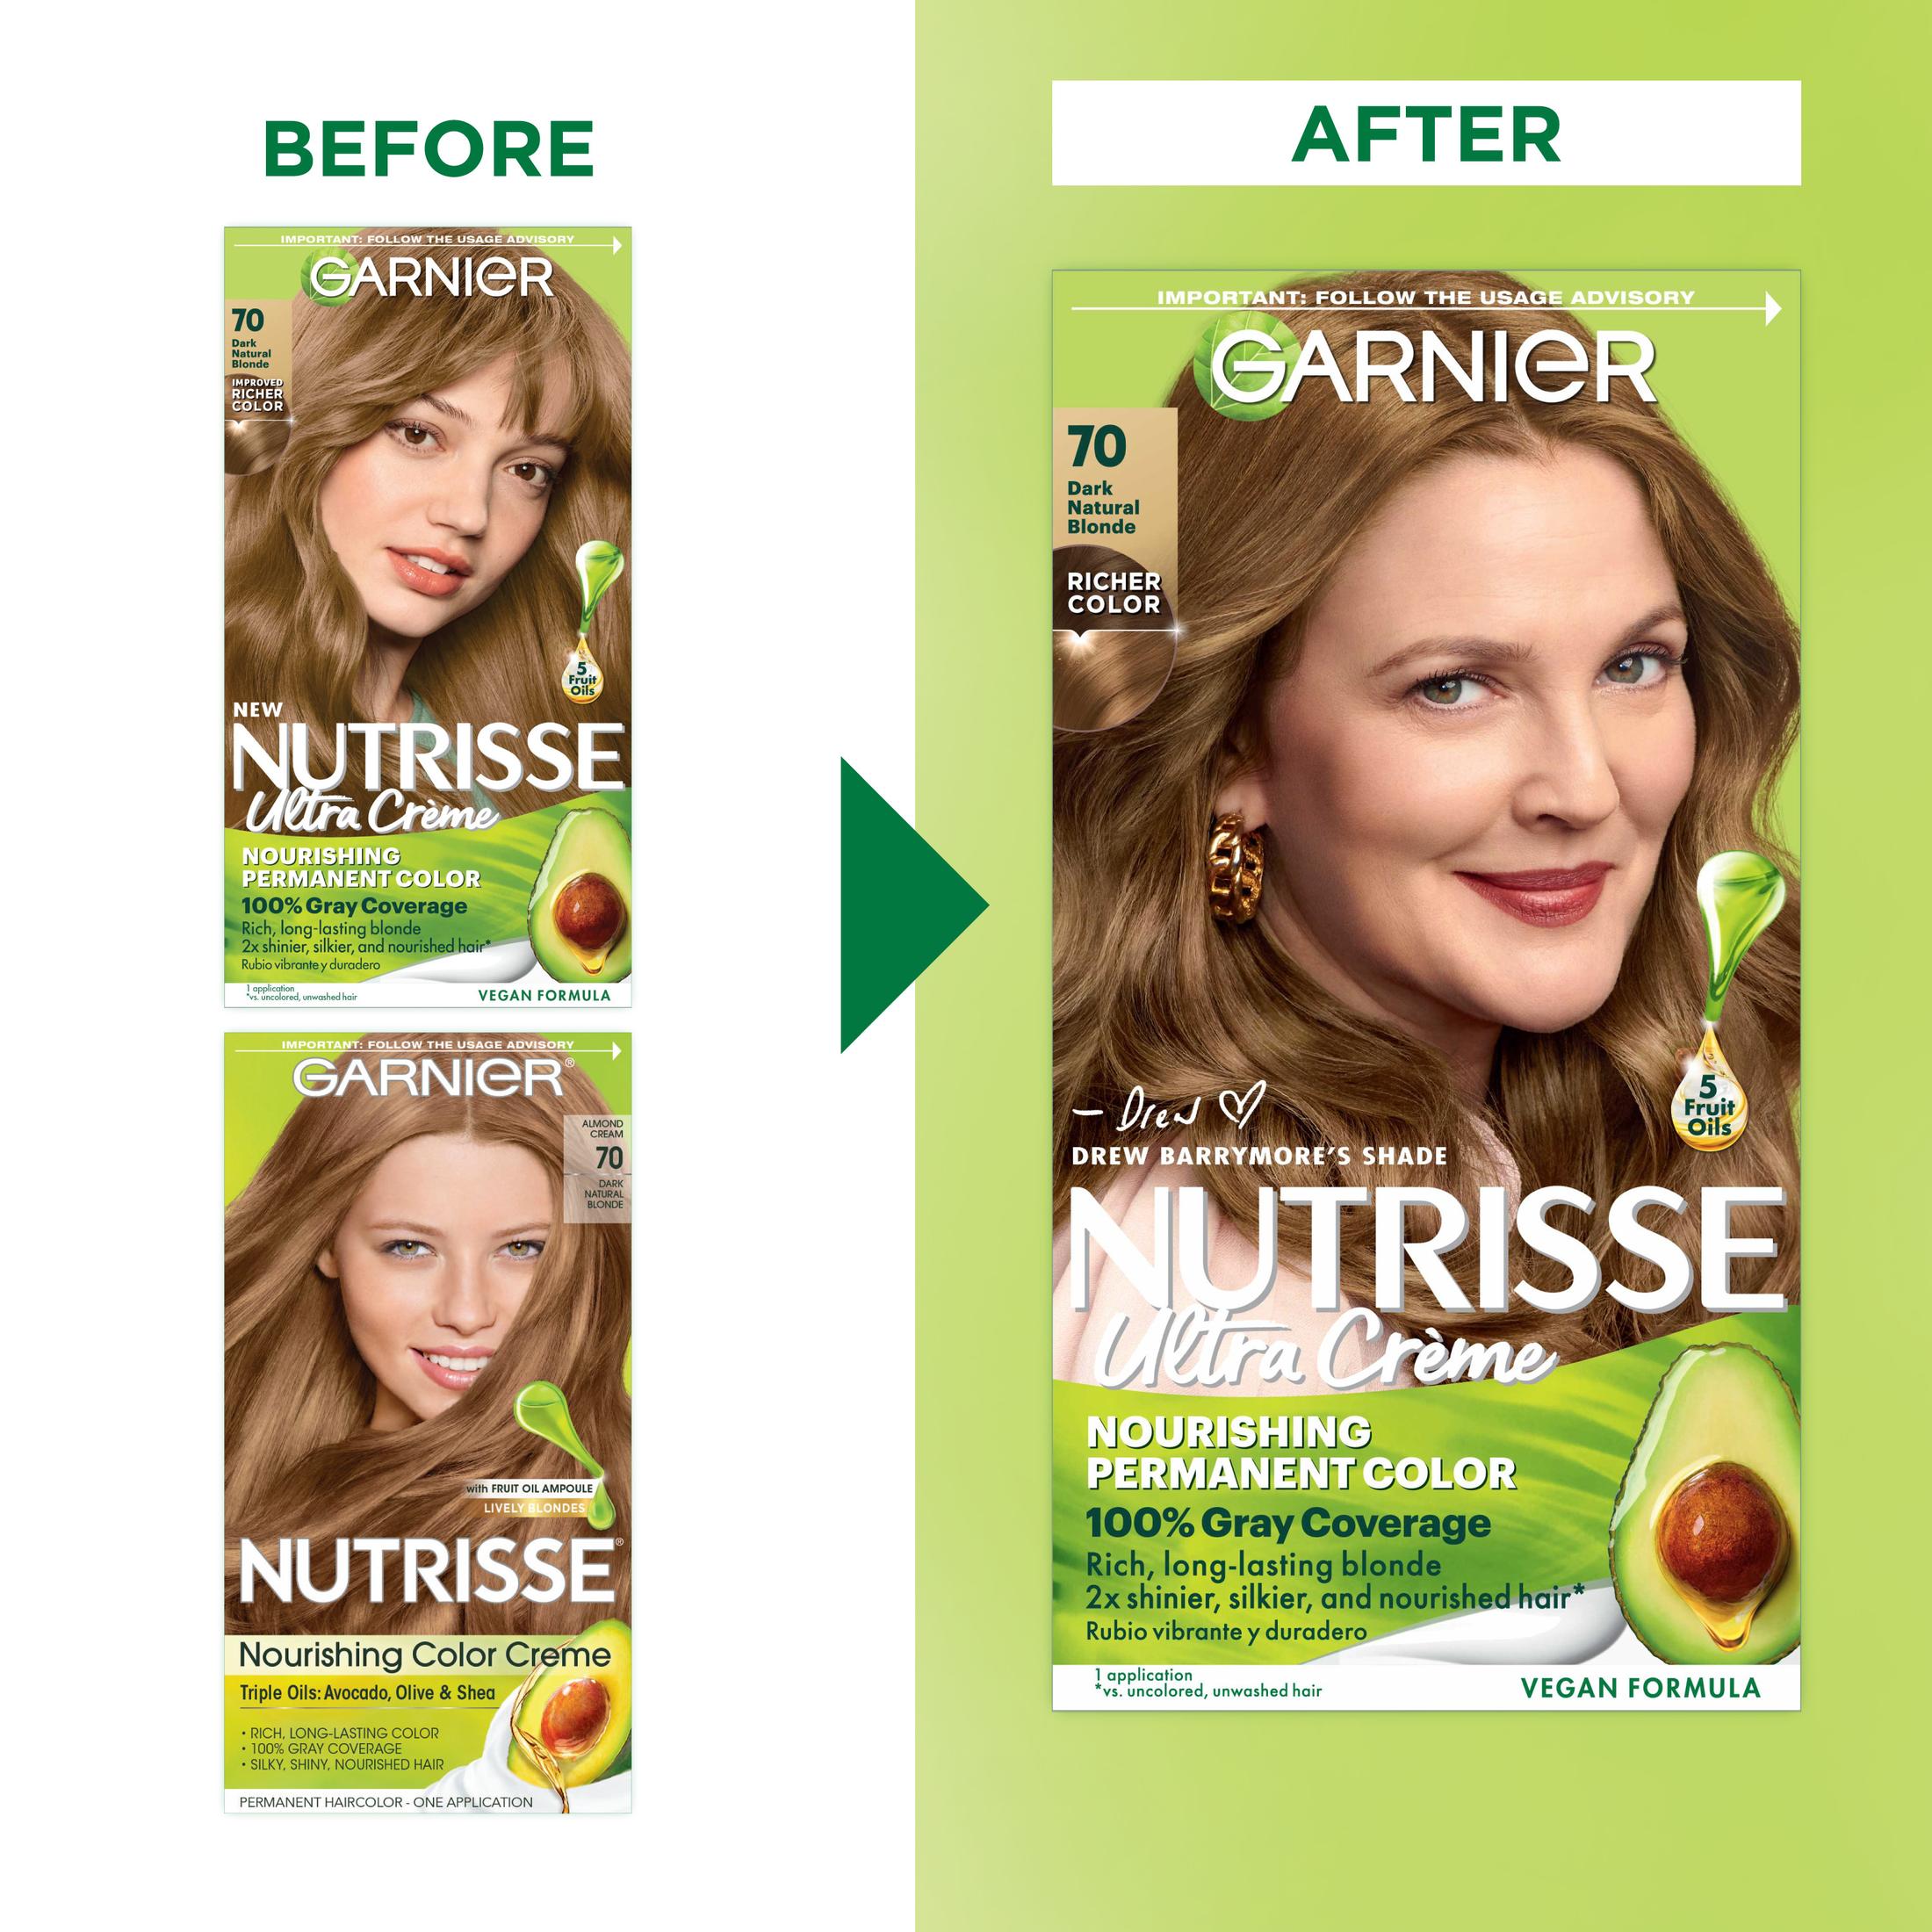 Garnier Nutrisse Nourishing Hair Color Creme, 070 Dark Natural Blonde Almond Creme - image 3 of 10